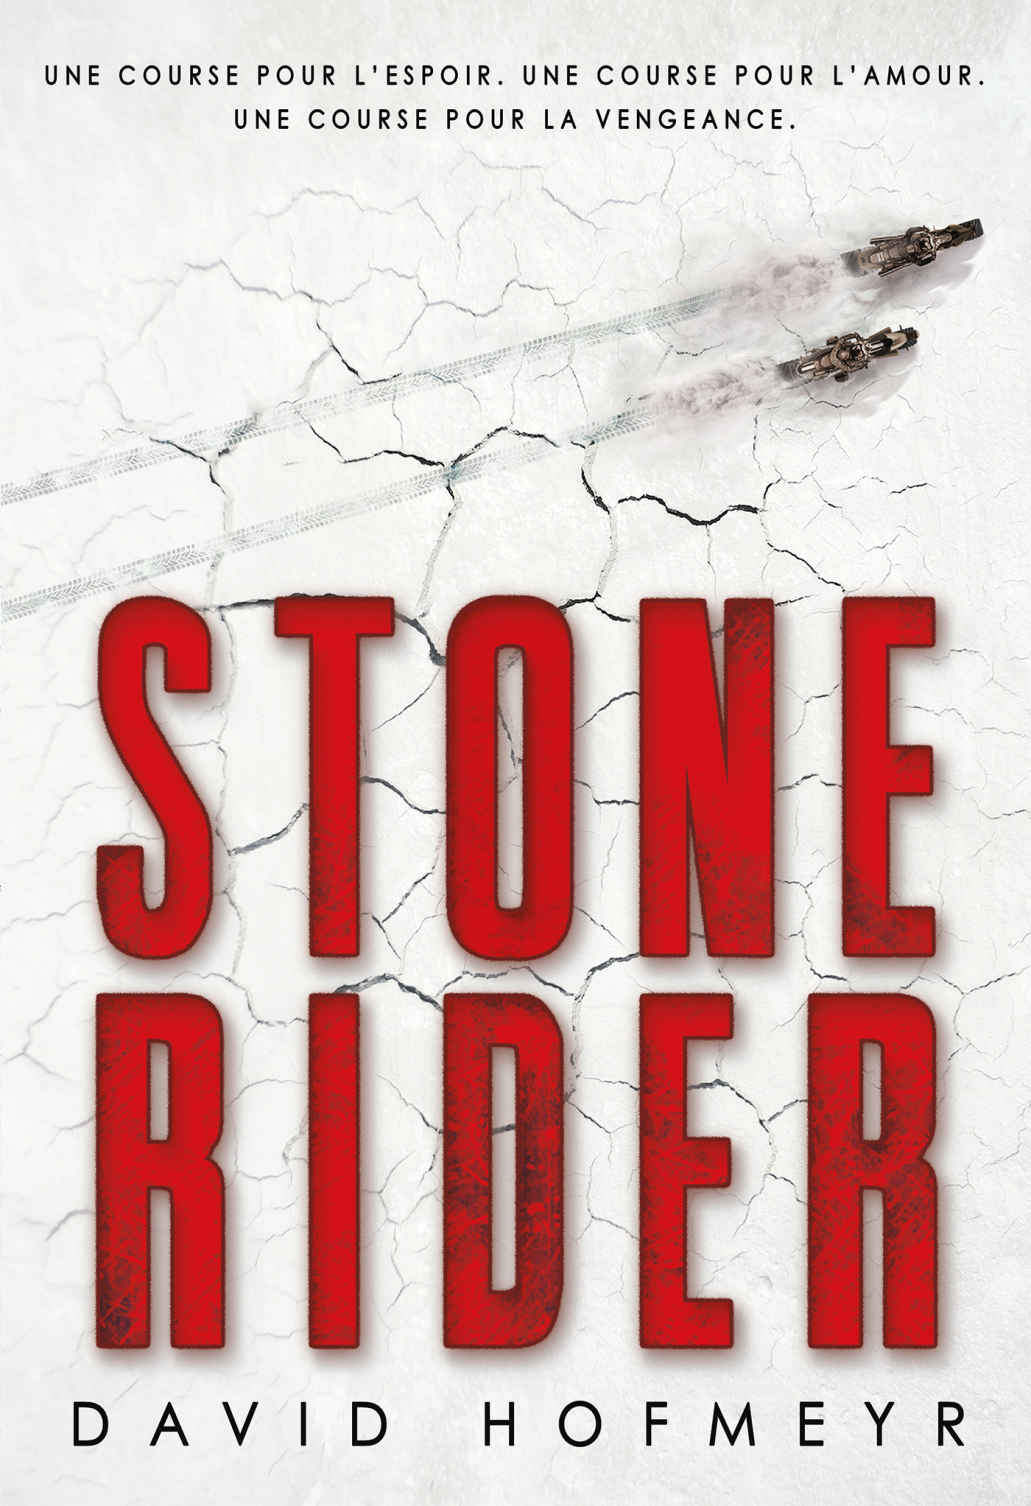 La Pépite du roman ado européen 13 ans et plus
« Stone Rider » de David Hofmeyr (traduit de l'anglais par Alice Marchand), (Gallimard Jeunesse)
